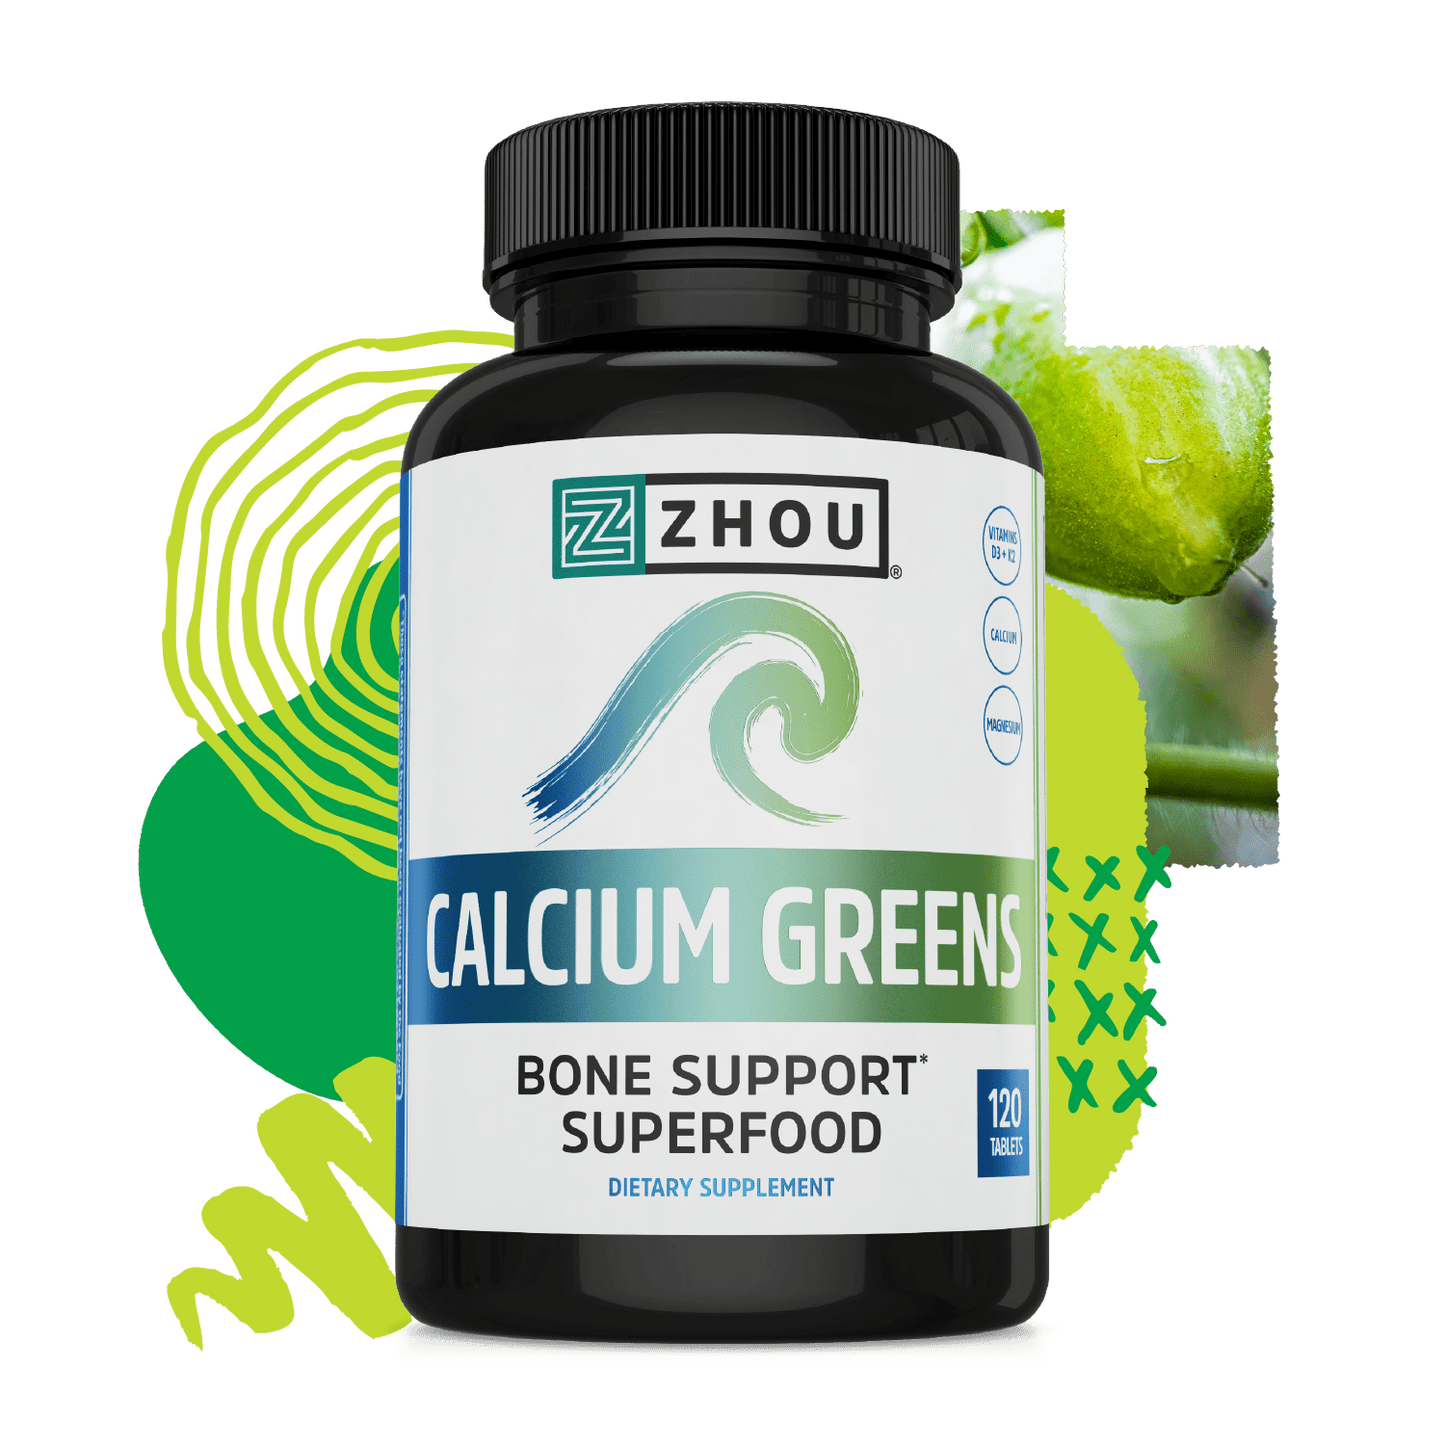 Calcium Greens